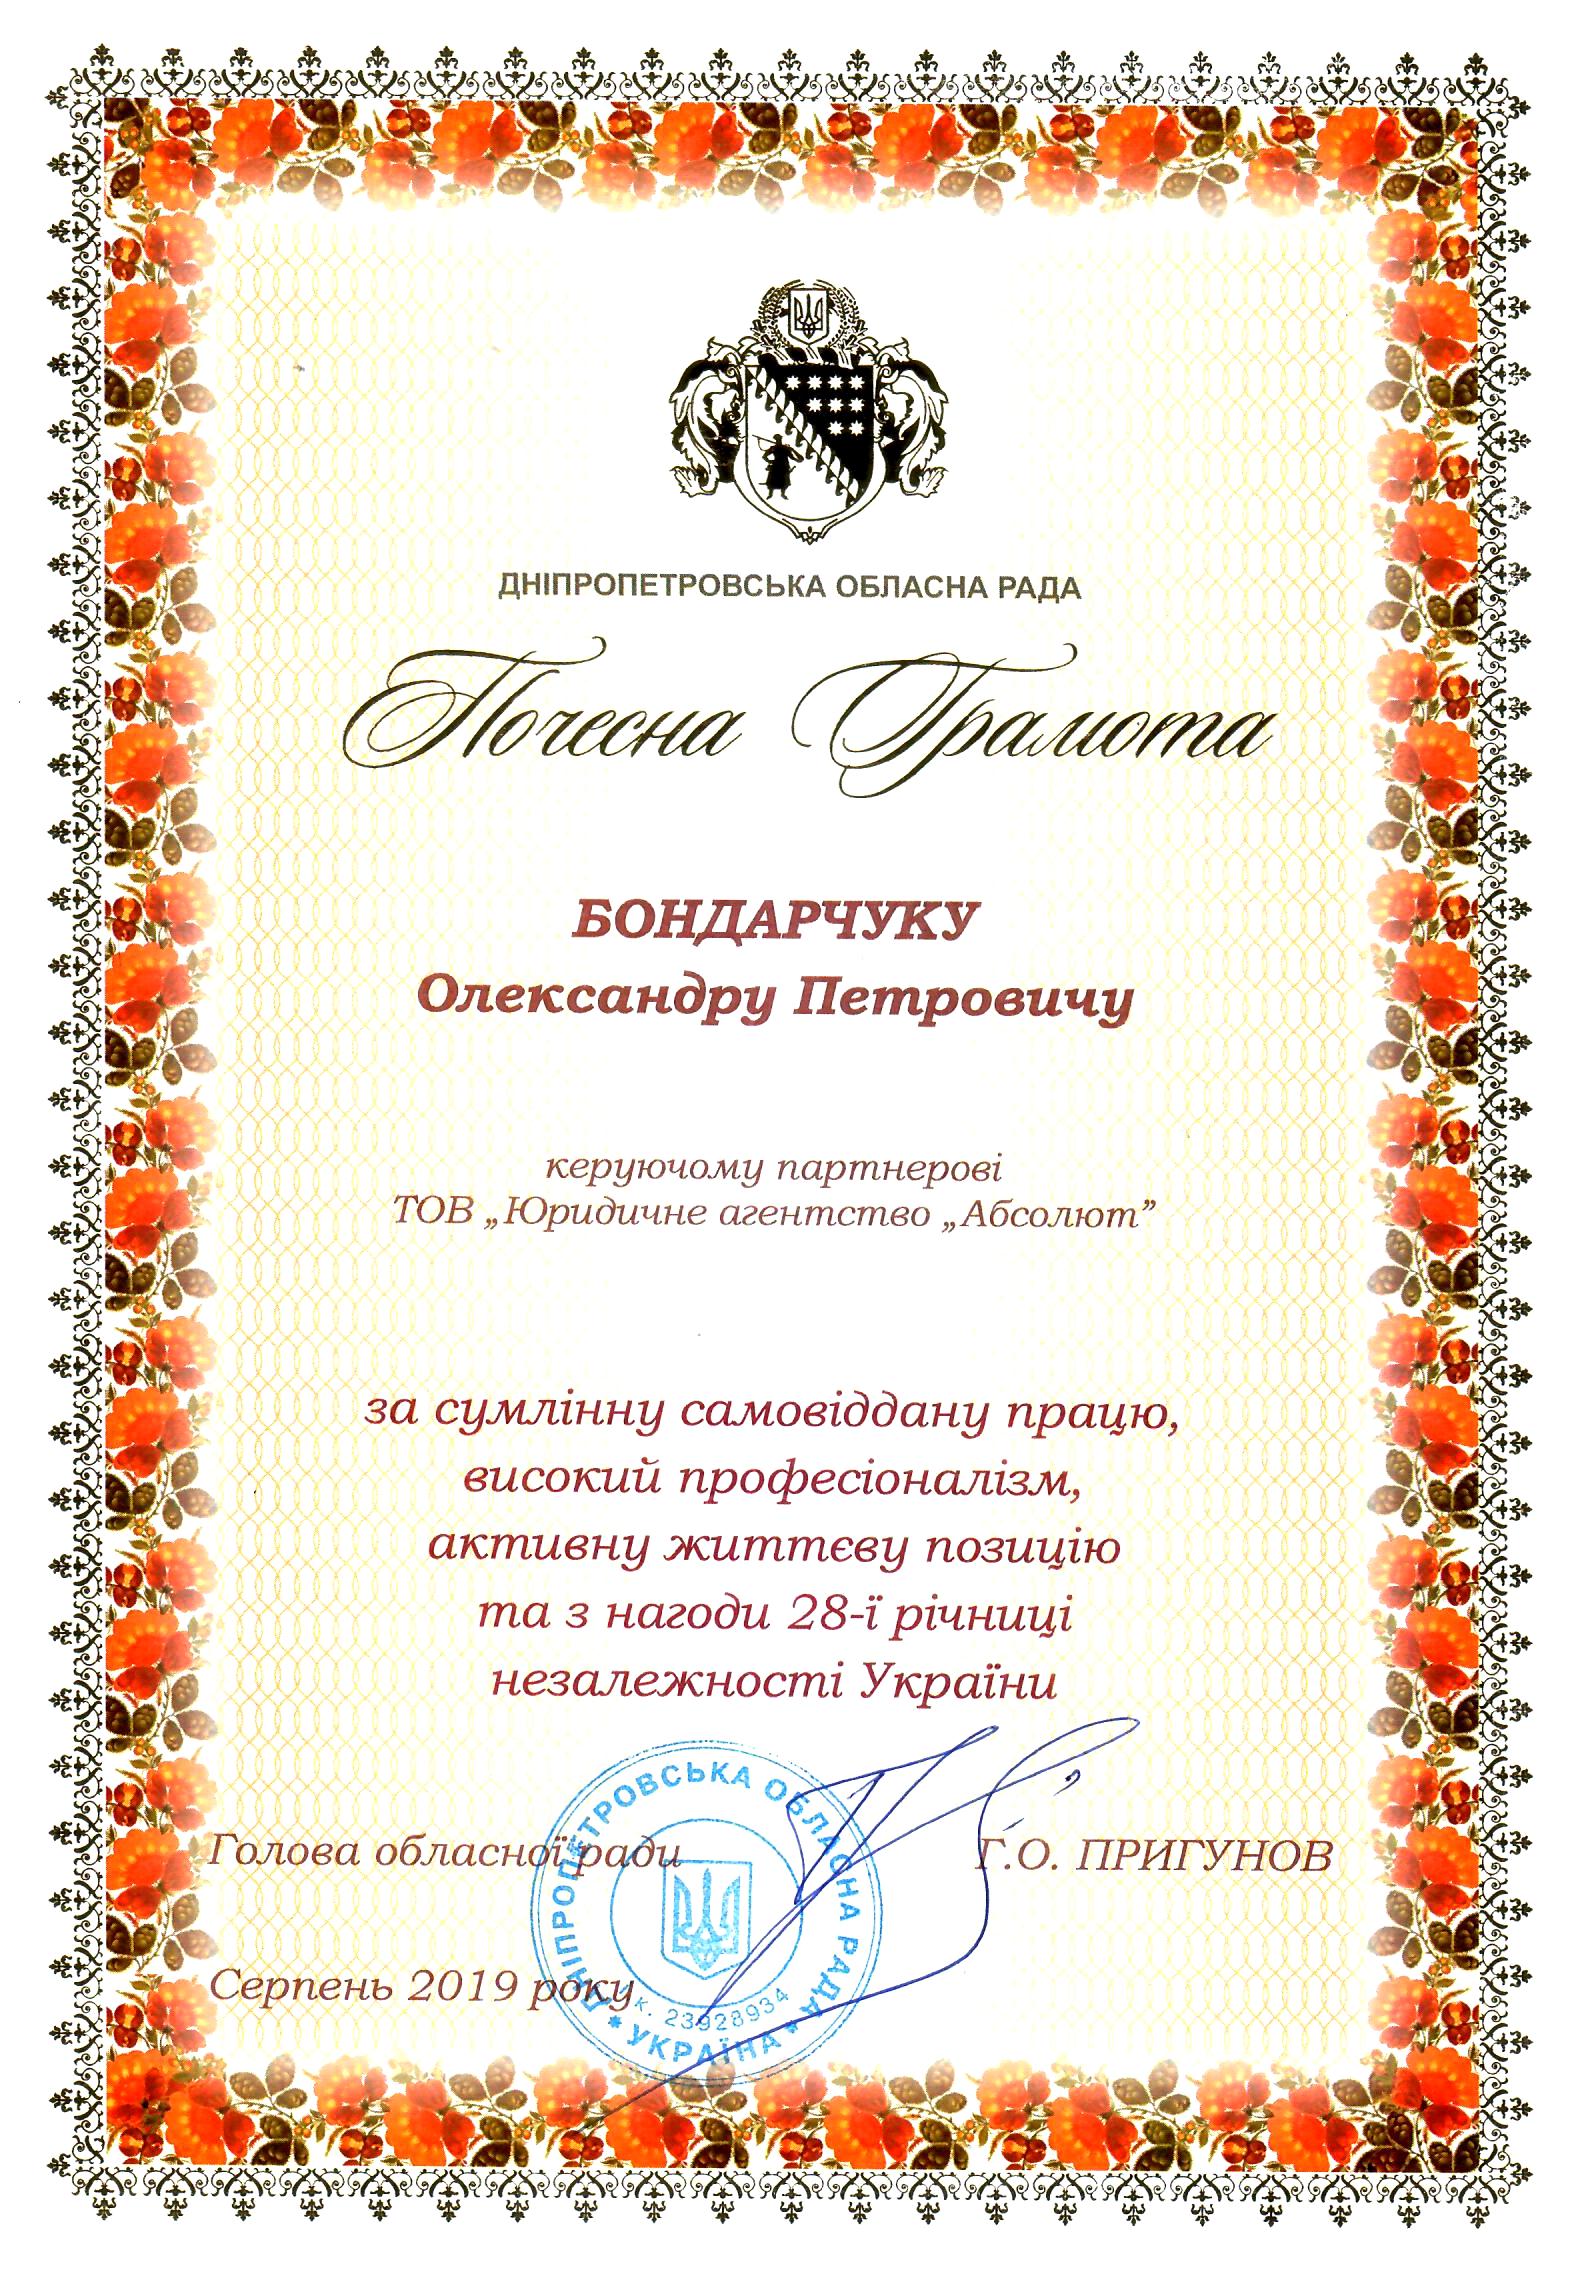 Александр Бондарчук награжден Почетной грамотой